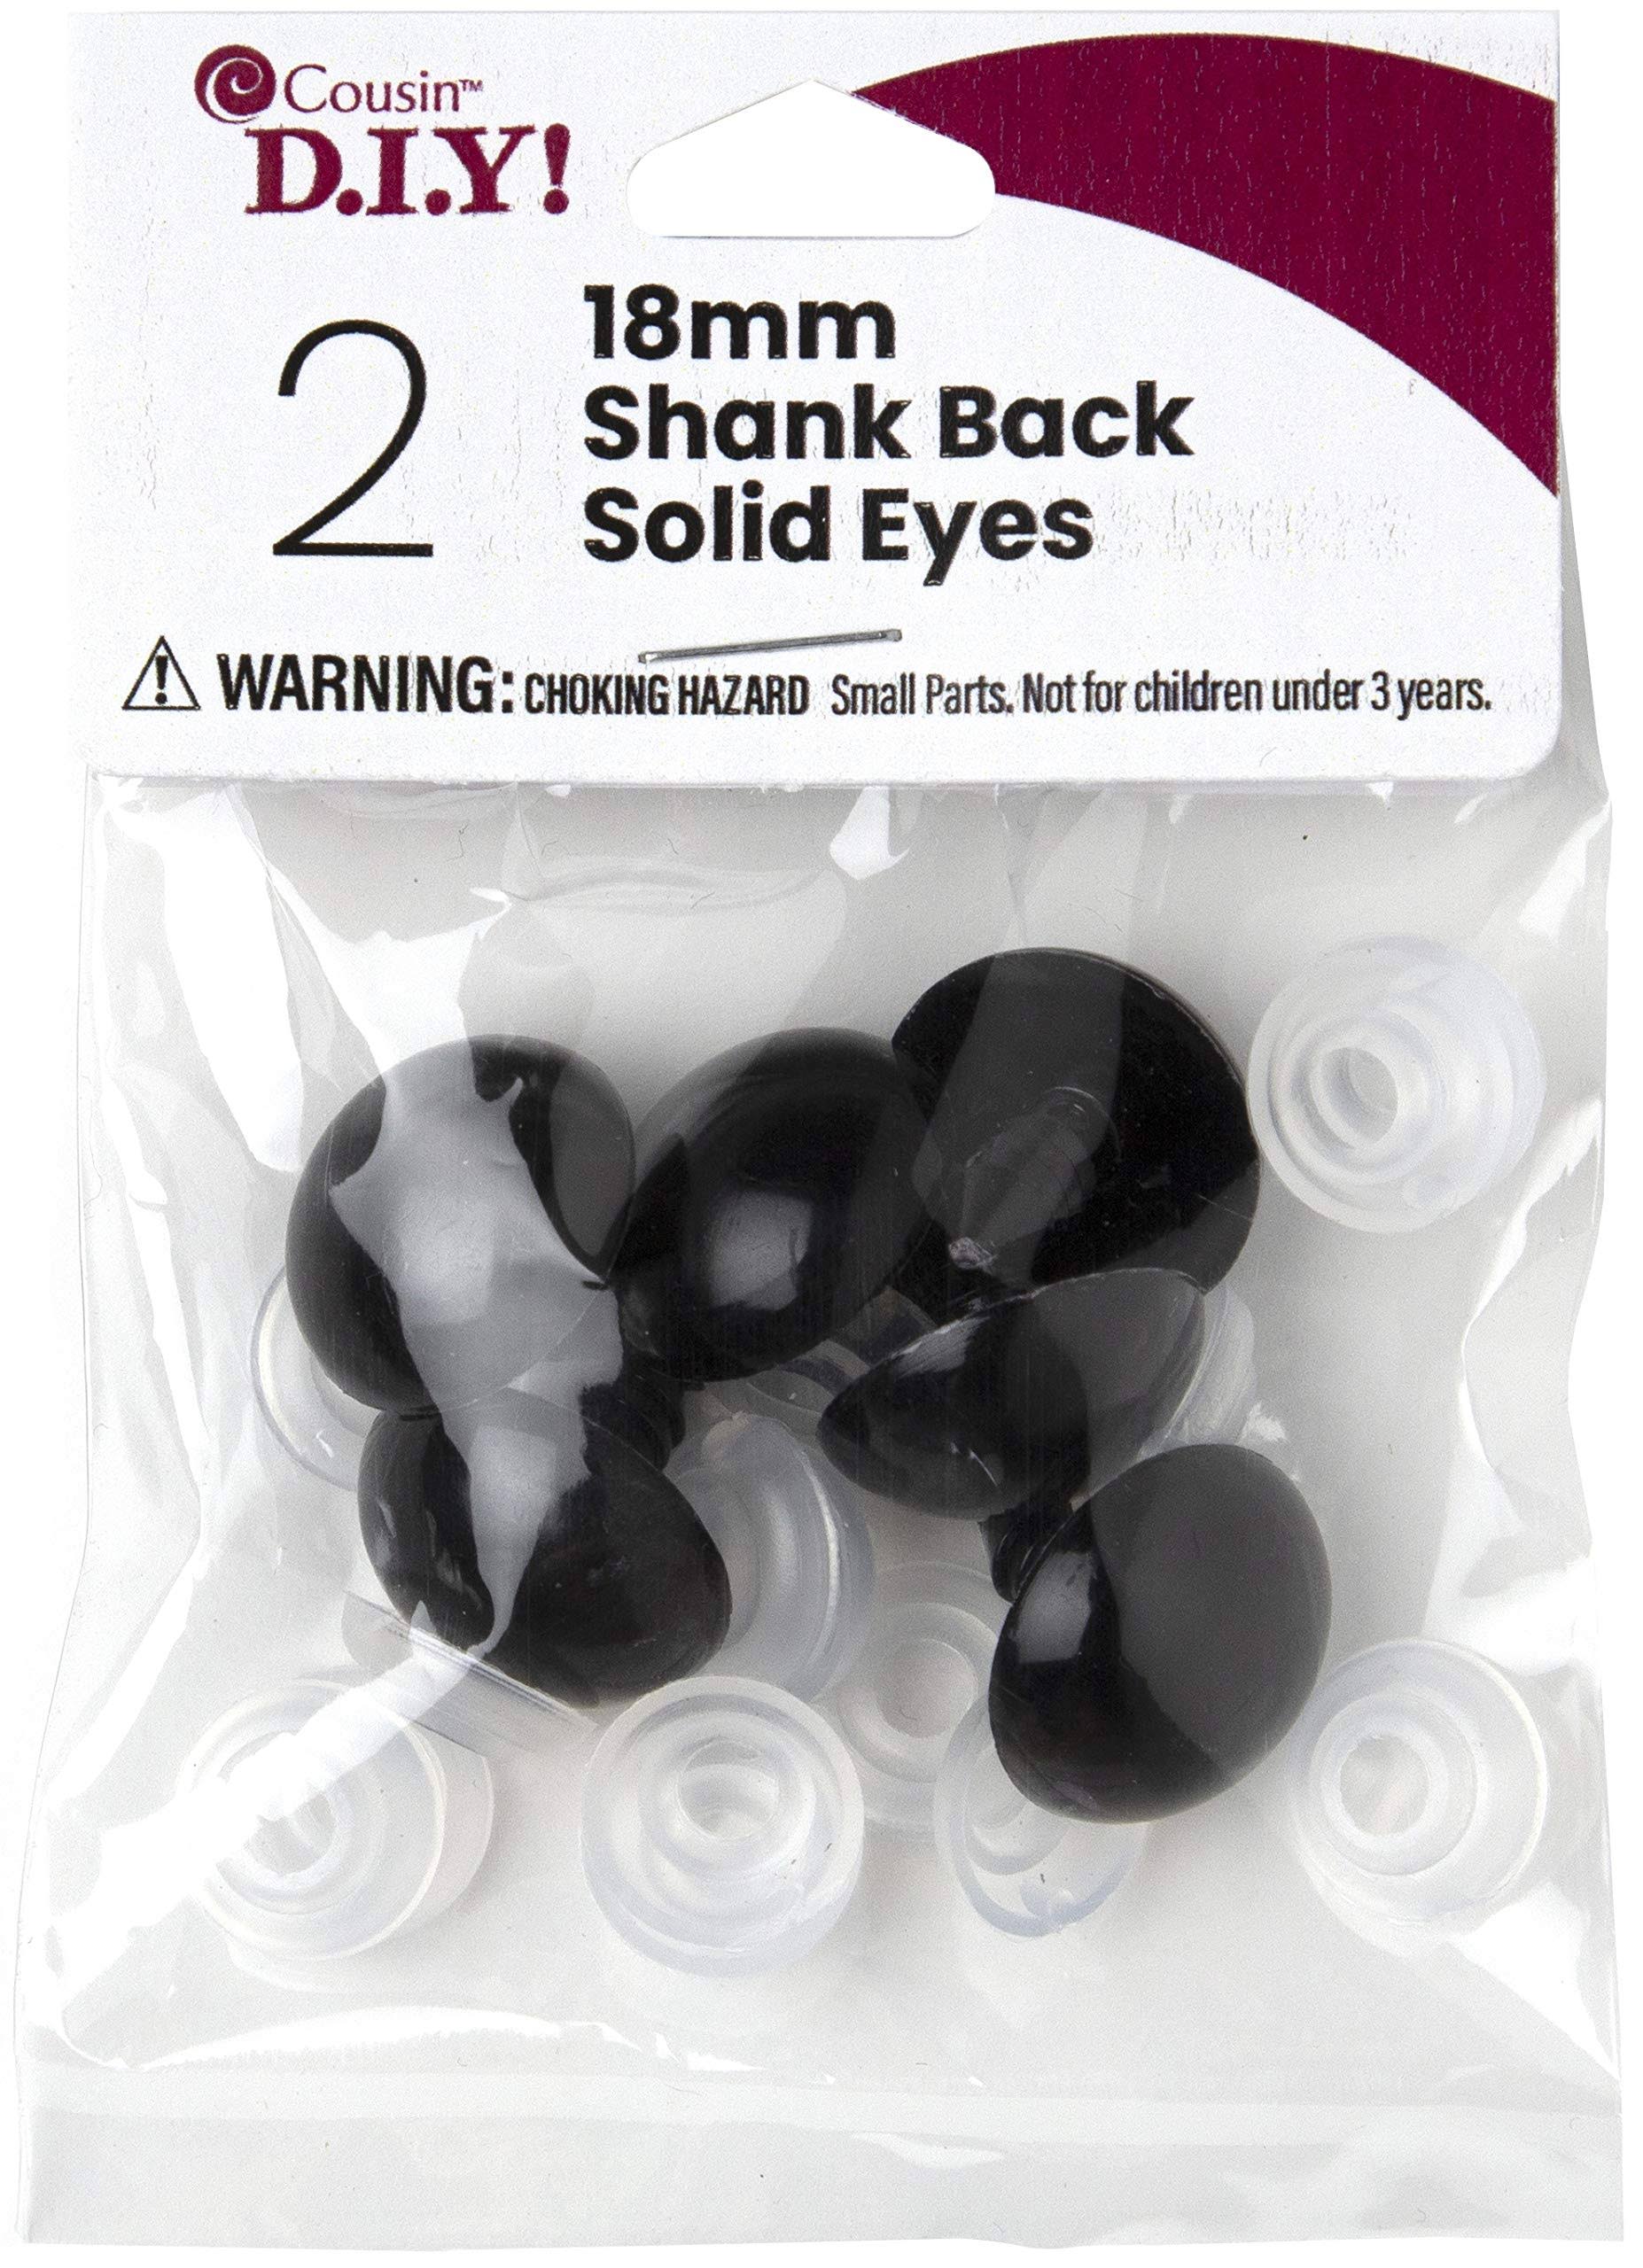 Cousin Shank Back Solid Eyes 18mm 2 Pack - Black